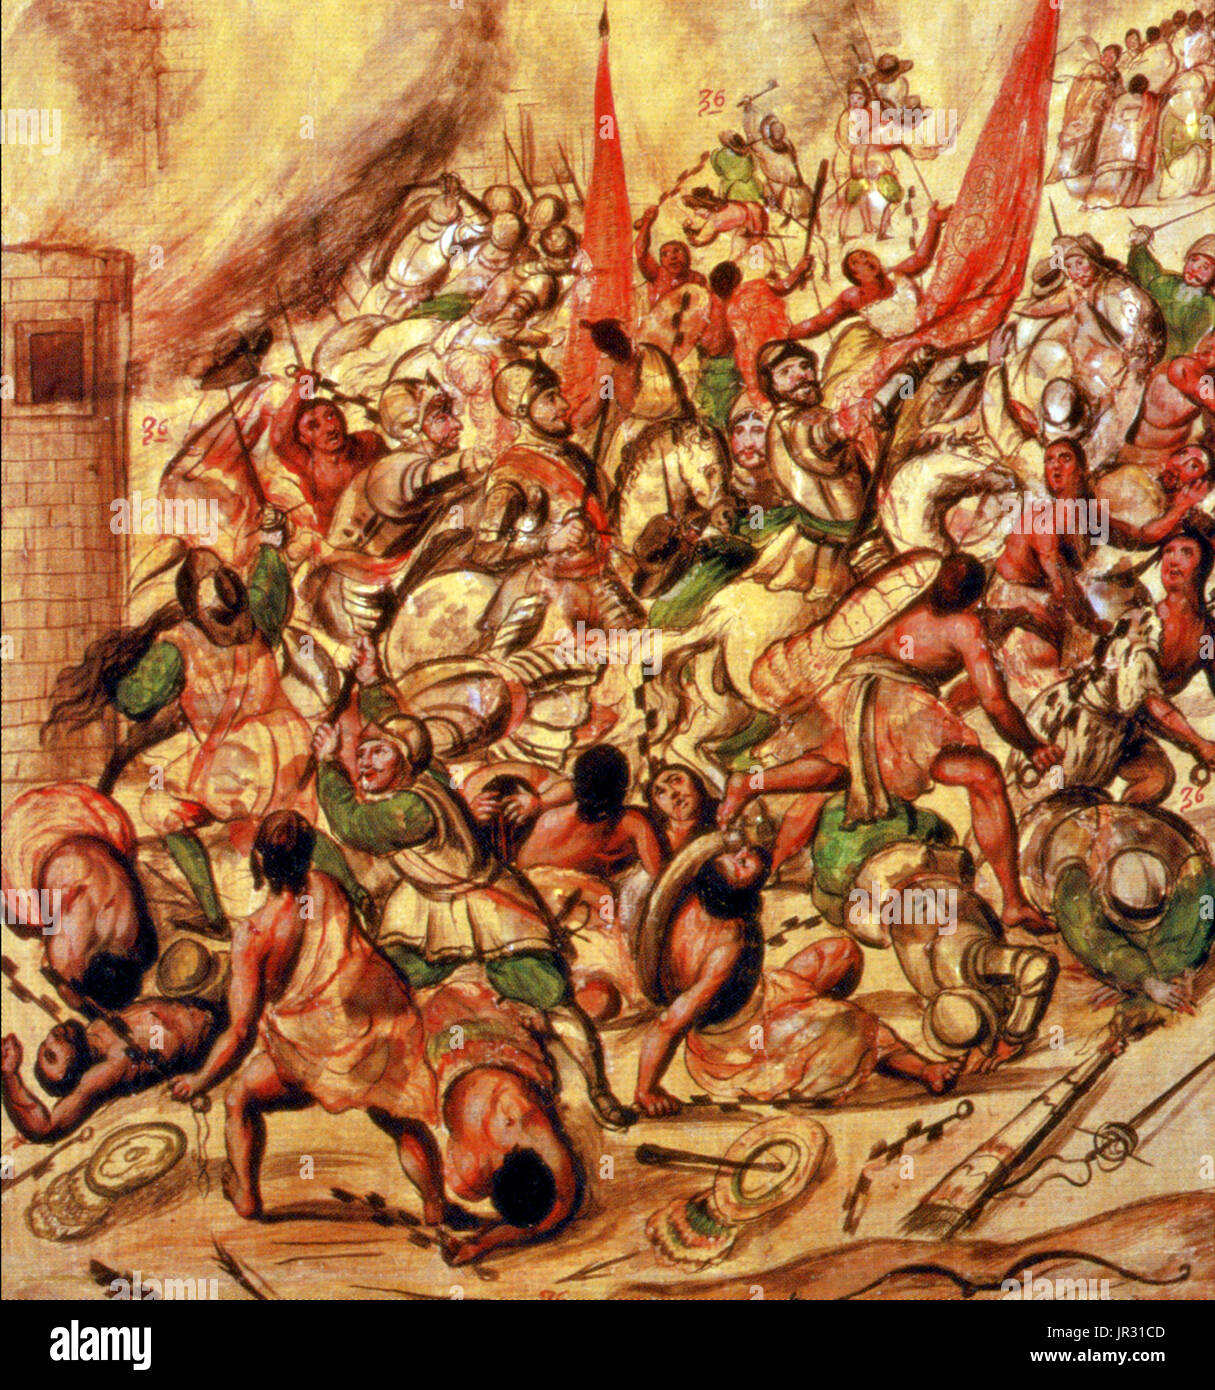 La Noche triste le 30 juin 1520, a été un événement important au cours de la conquête espagnole du Mexique, où Hernando Cortez et son armée d'invasion des conquistadors espagnols et des alliés autochtones ont été chassés de la capitale mexicaine à Tenochtitlan après la mort du roi aztèque Moctezuma II. Dans la nuit du 1 juillet 1520, Cortez et son armée quittèrent leur composé et dirigé à l'ouest, vers la chaussée de Tlacopan. Comme les Espagnols et leurs alliés autochtones atteint la chaussée, des centaines de pirogues est apparue dans les eaux aux côtés d'harry. Les Espagnols ont lutté leur chemin à travers la chaussée dans le rai Banque D'Images